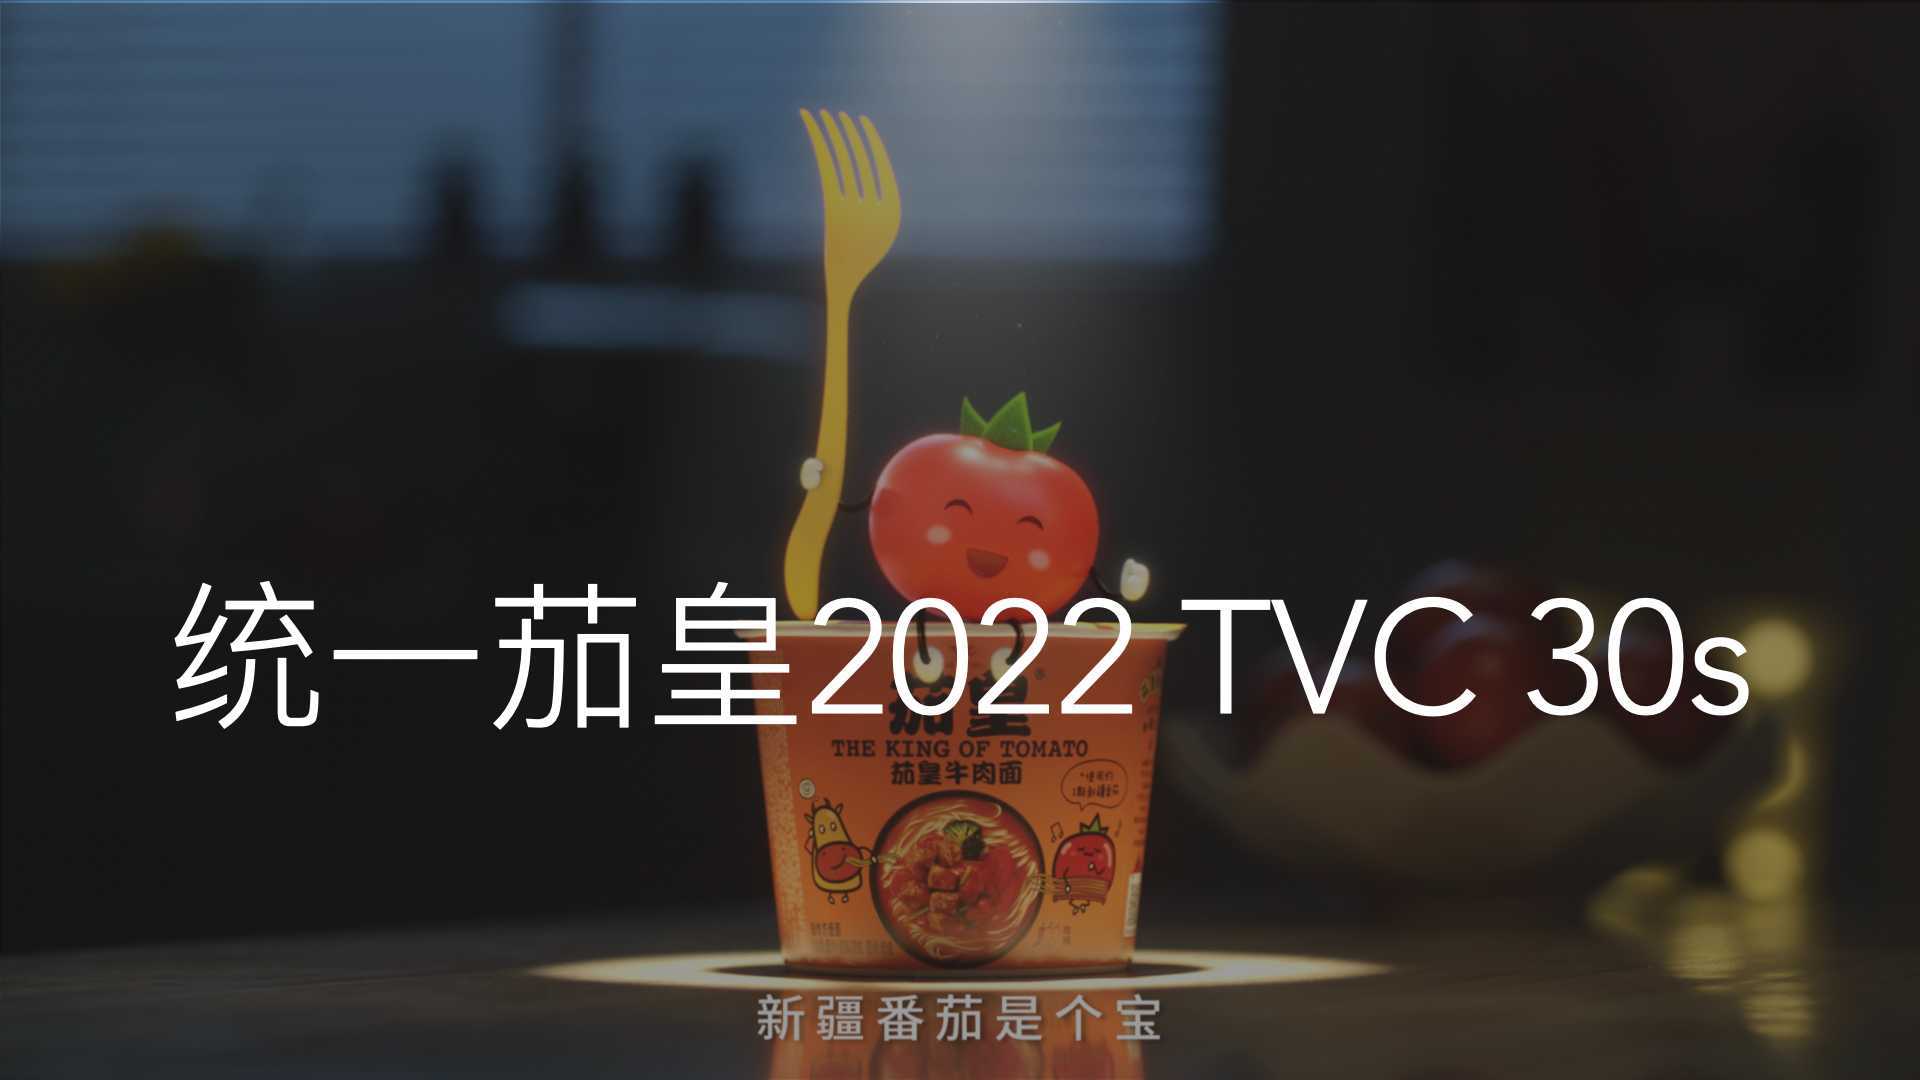 统一茄皇2022 TVC 30s 导演版